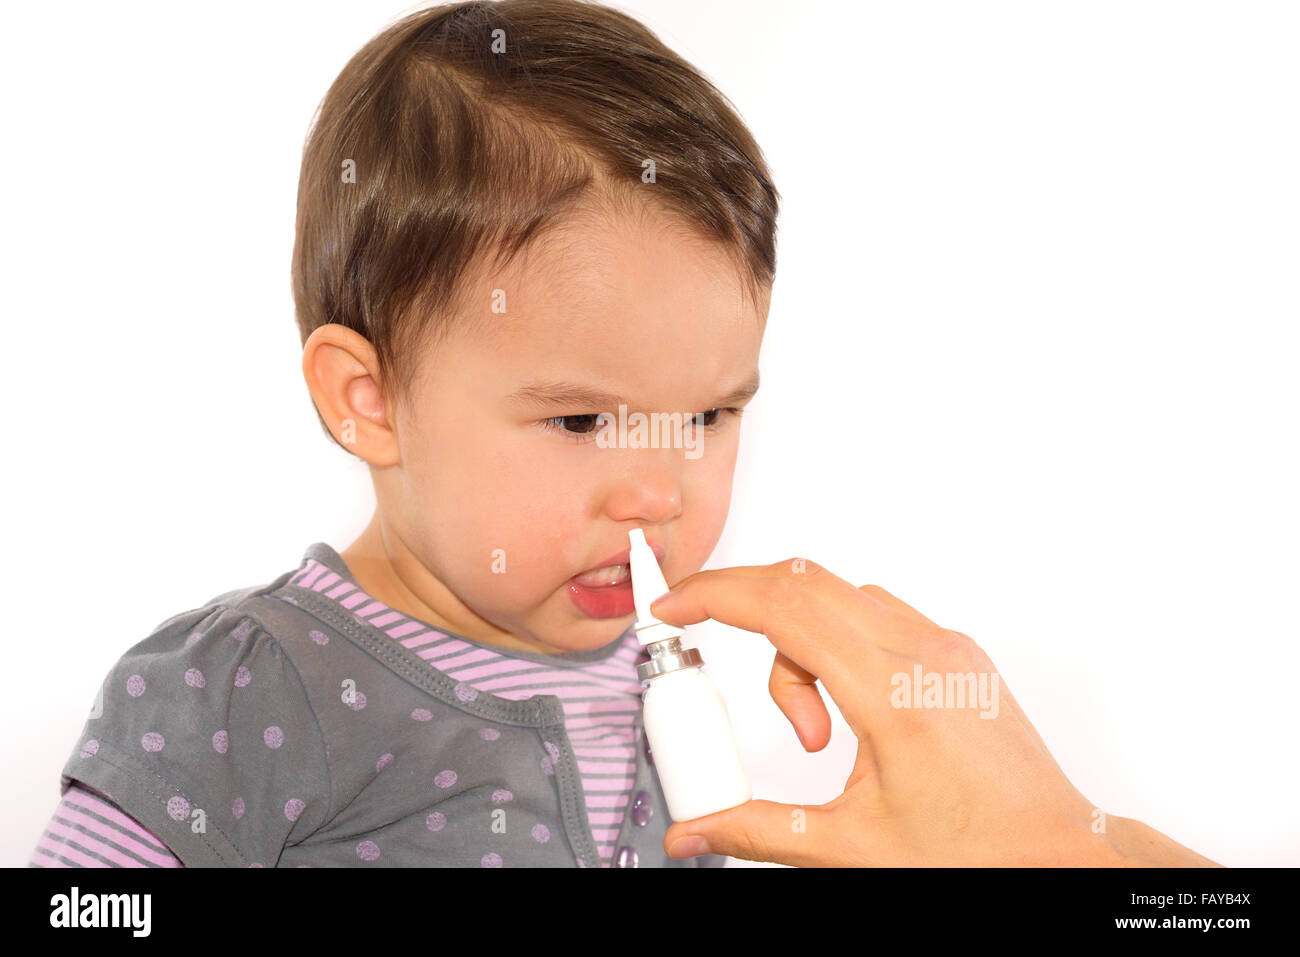 parent's hand of a girl applies a nasal spray Stock Photo